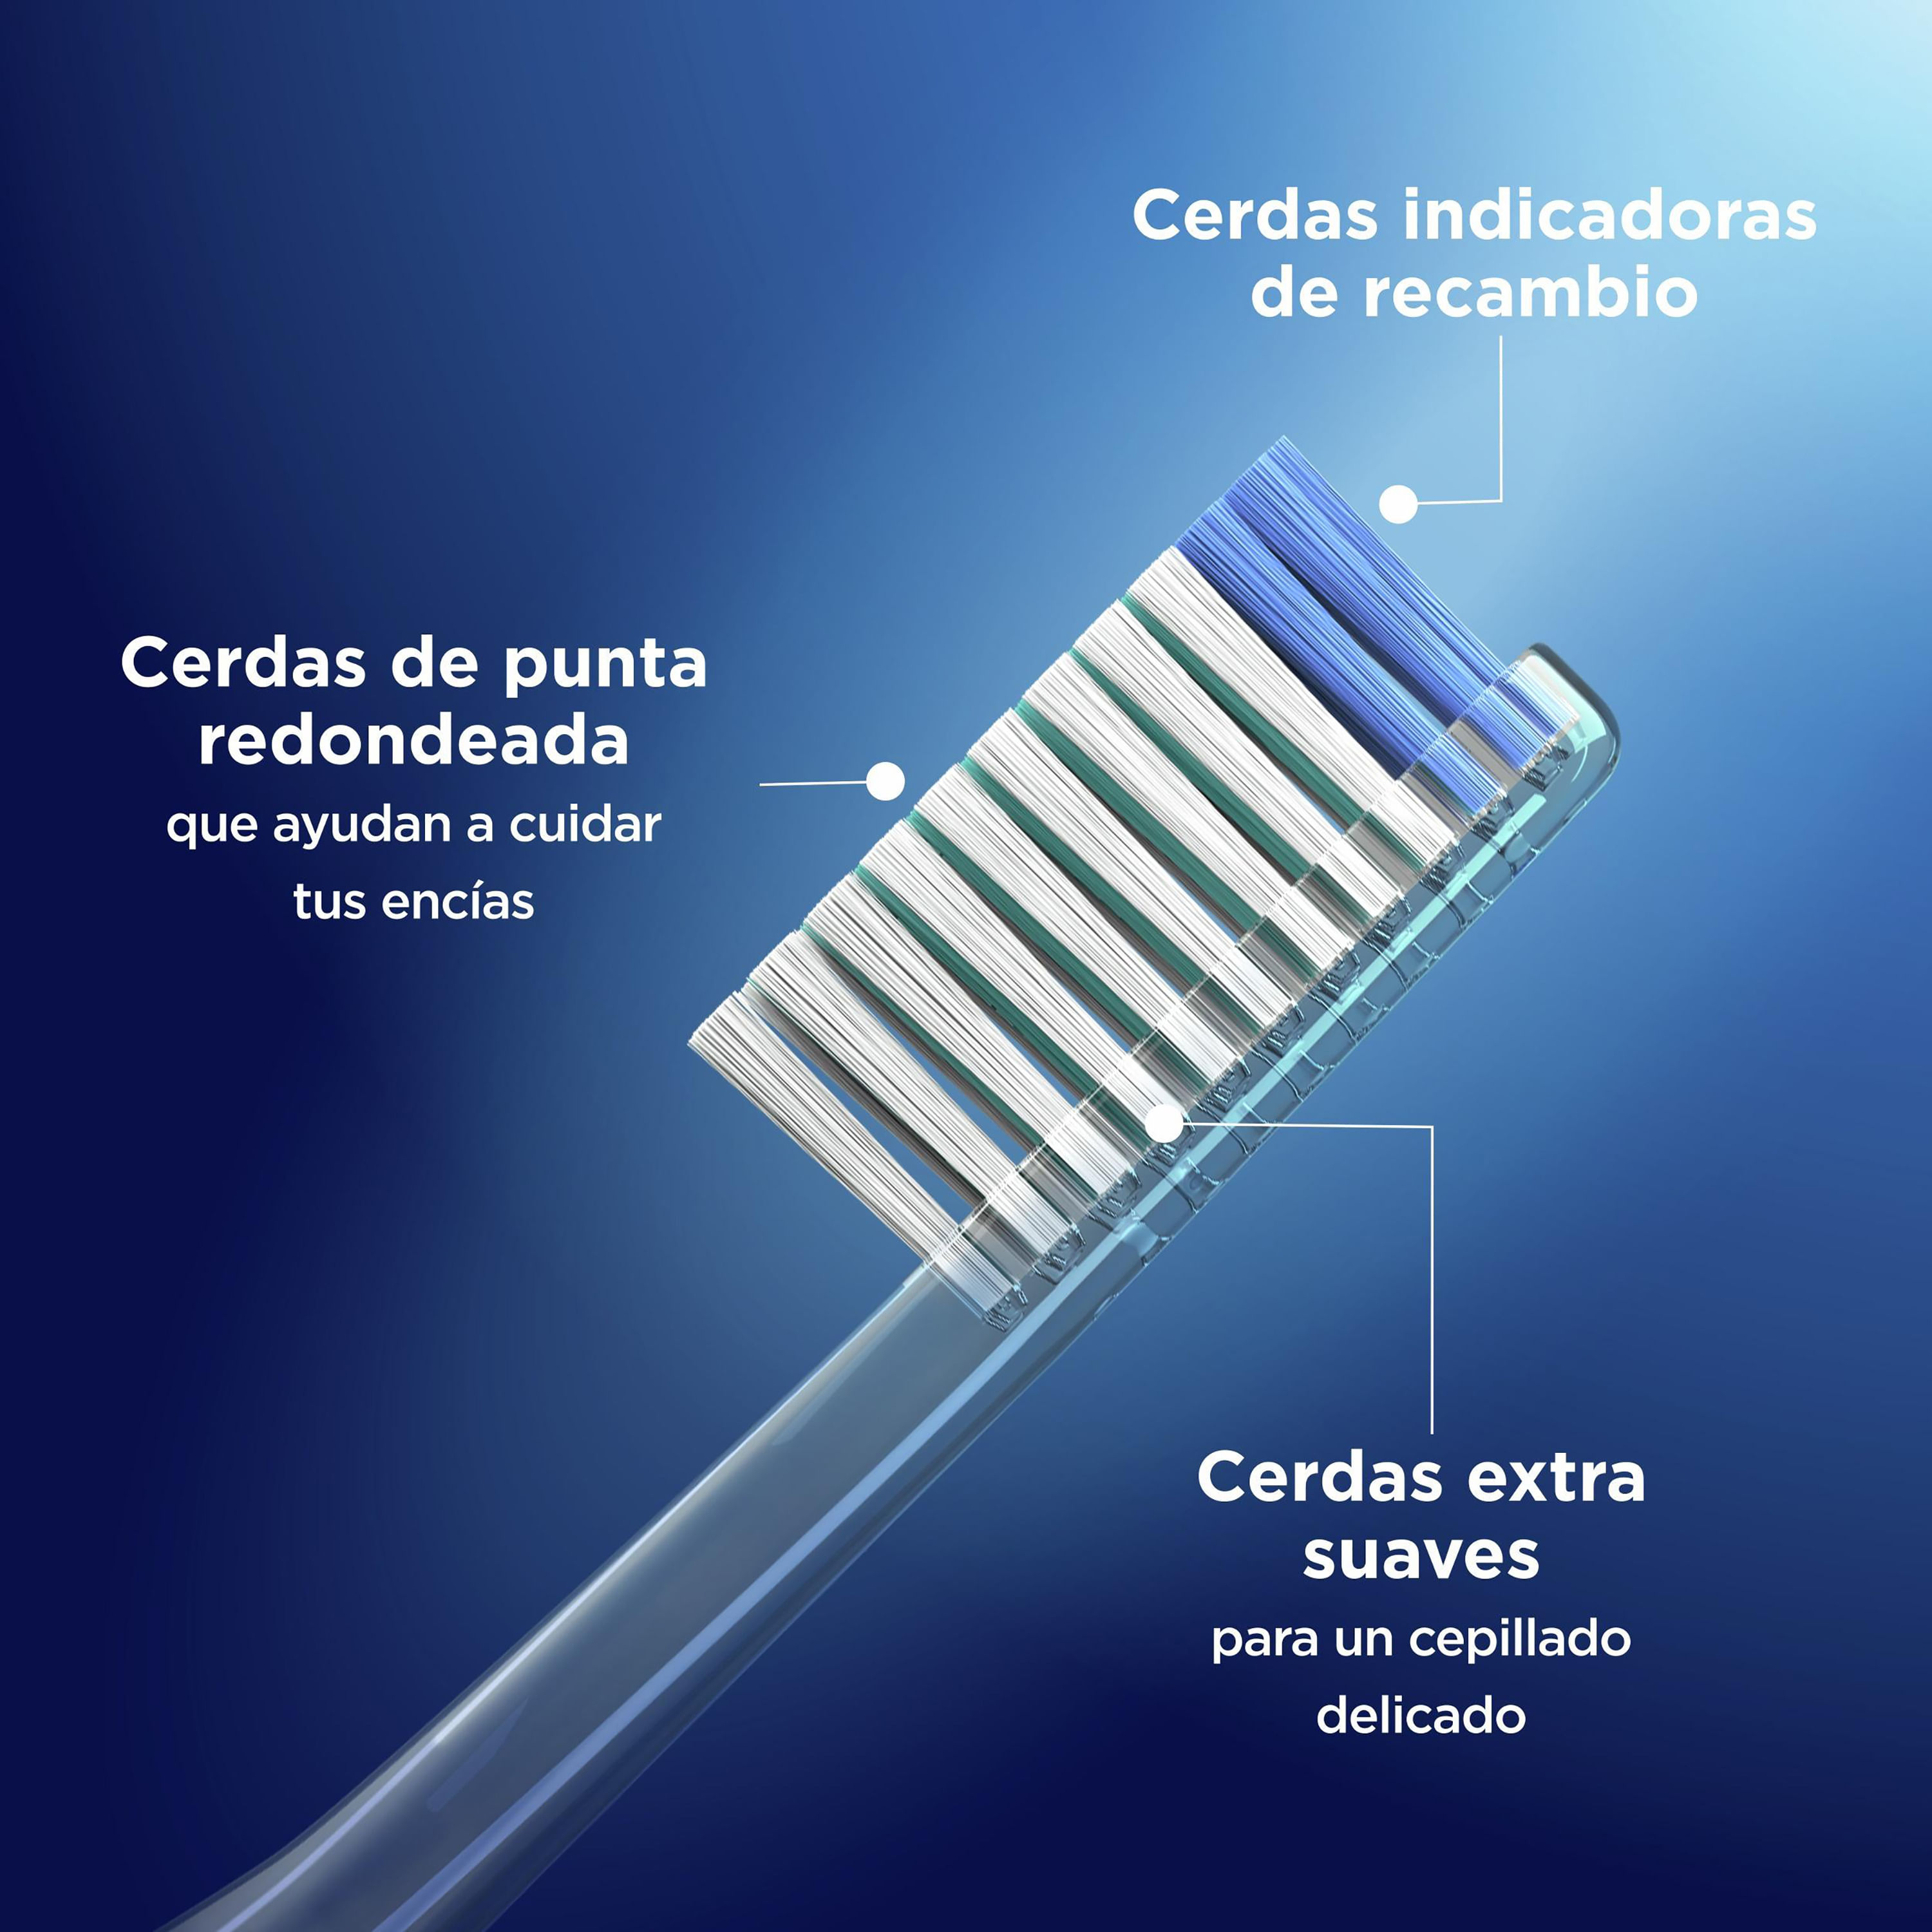 ORAL B Repuesto cepillo eléctrico Oral-B sensitive 2 unidades